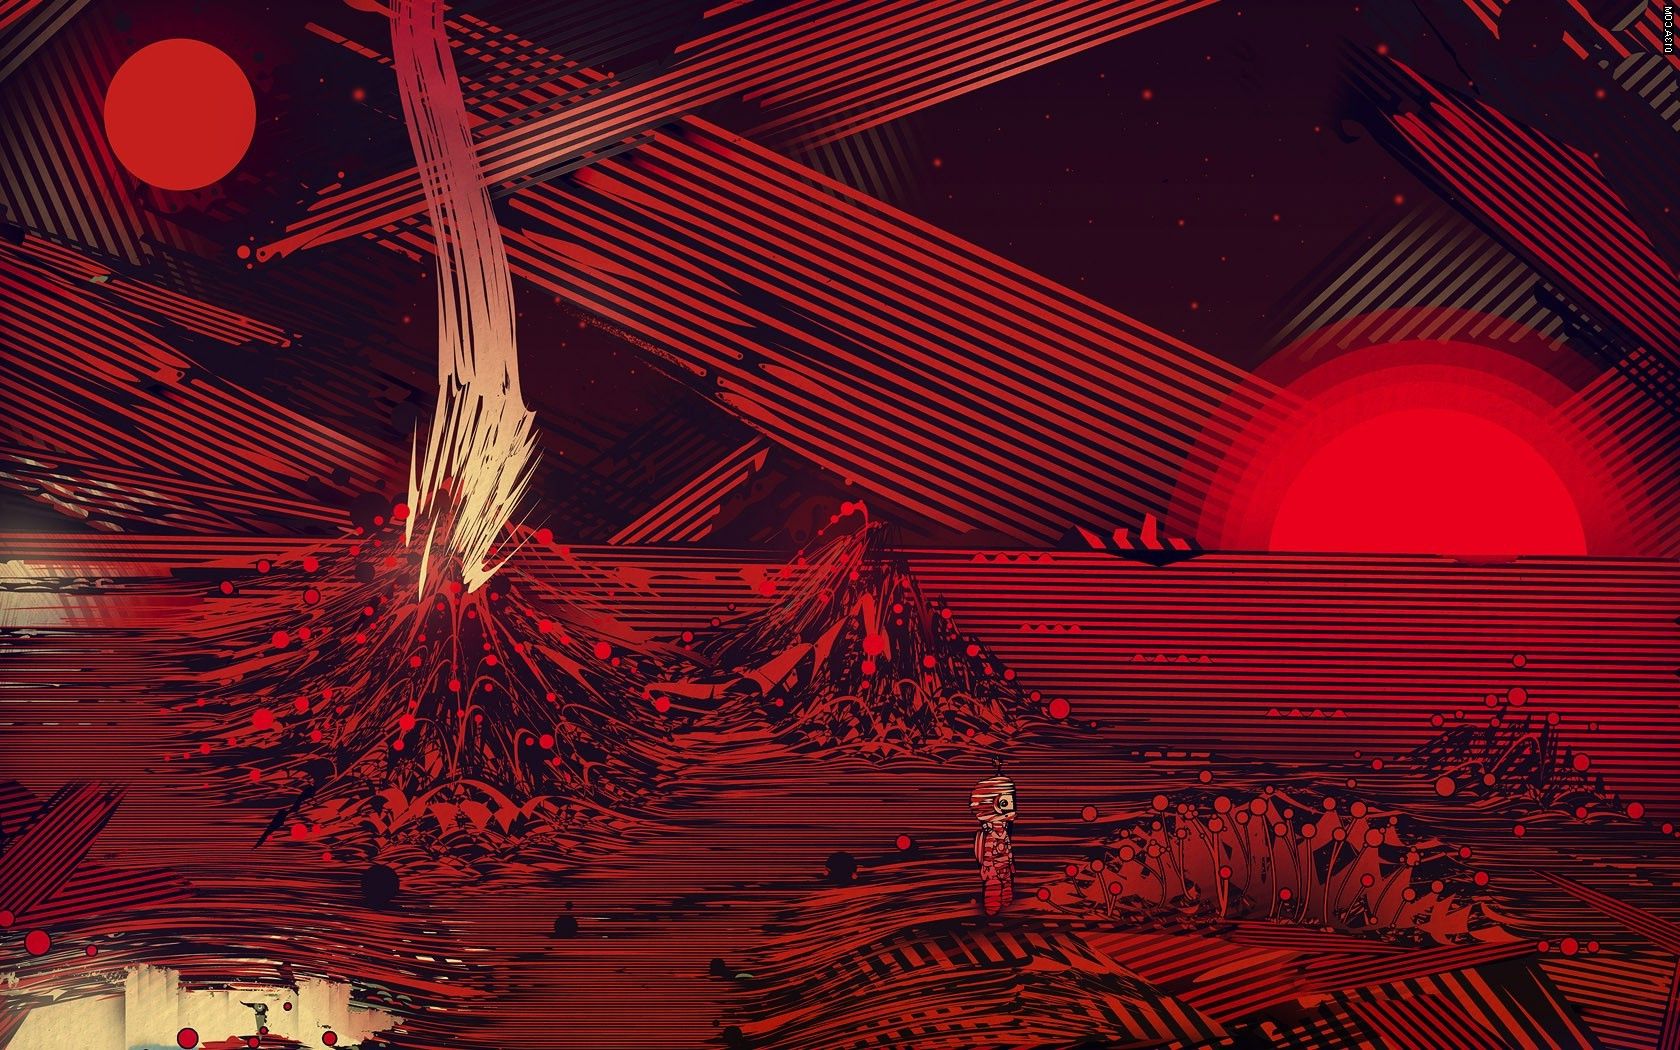 طرح زمینه هنری بیابان انتزاعی قرمز با افکت و فیلتر بین کوه های  آتشفشانی فانتزی  